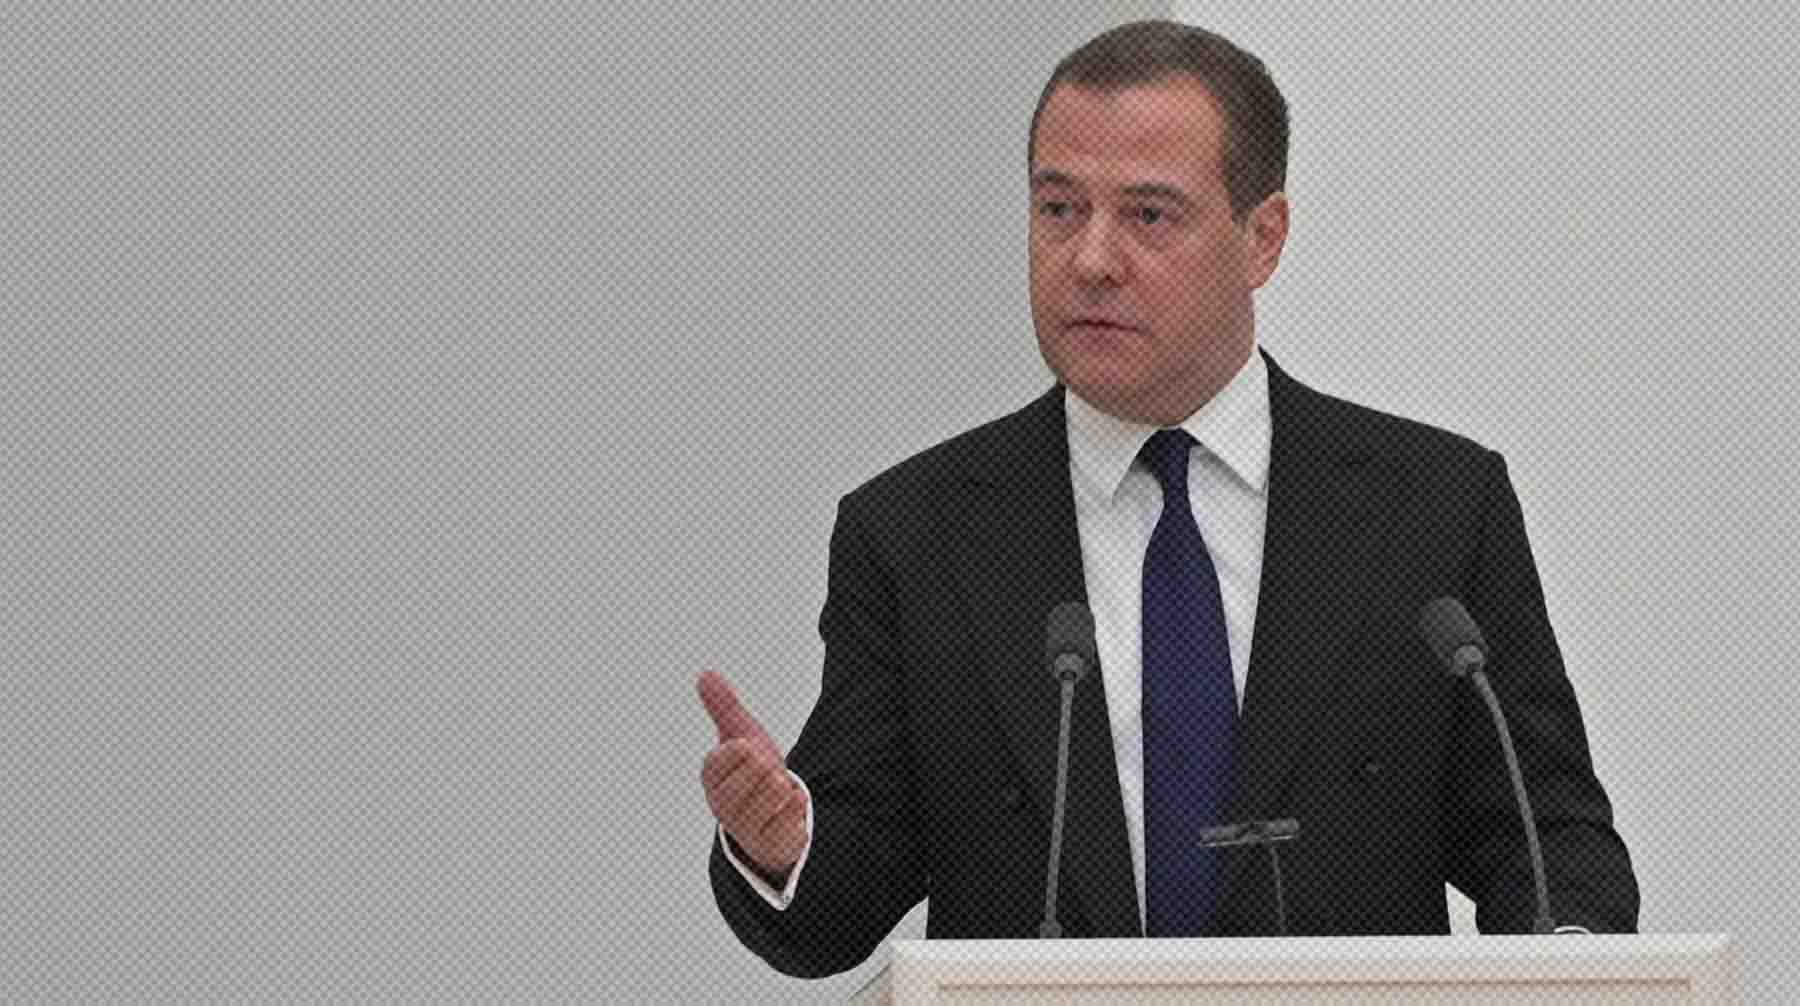 Dailystorm - Медведев сравнил санкции Запада с инквизицией